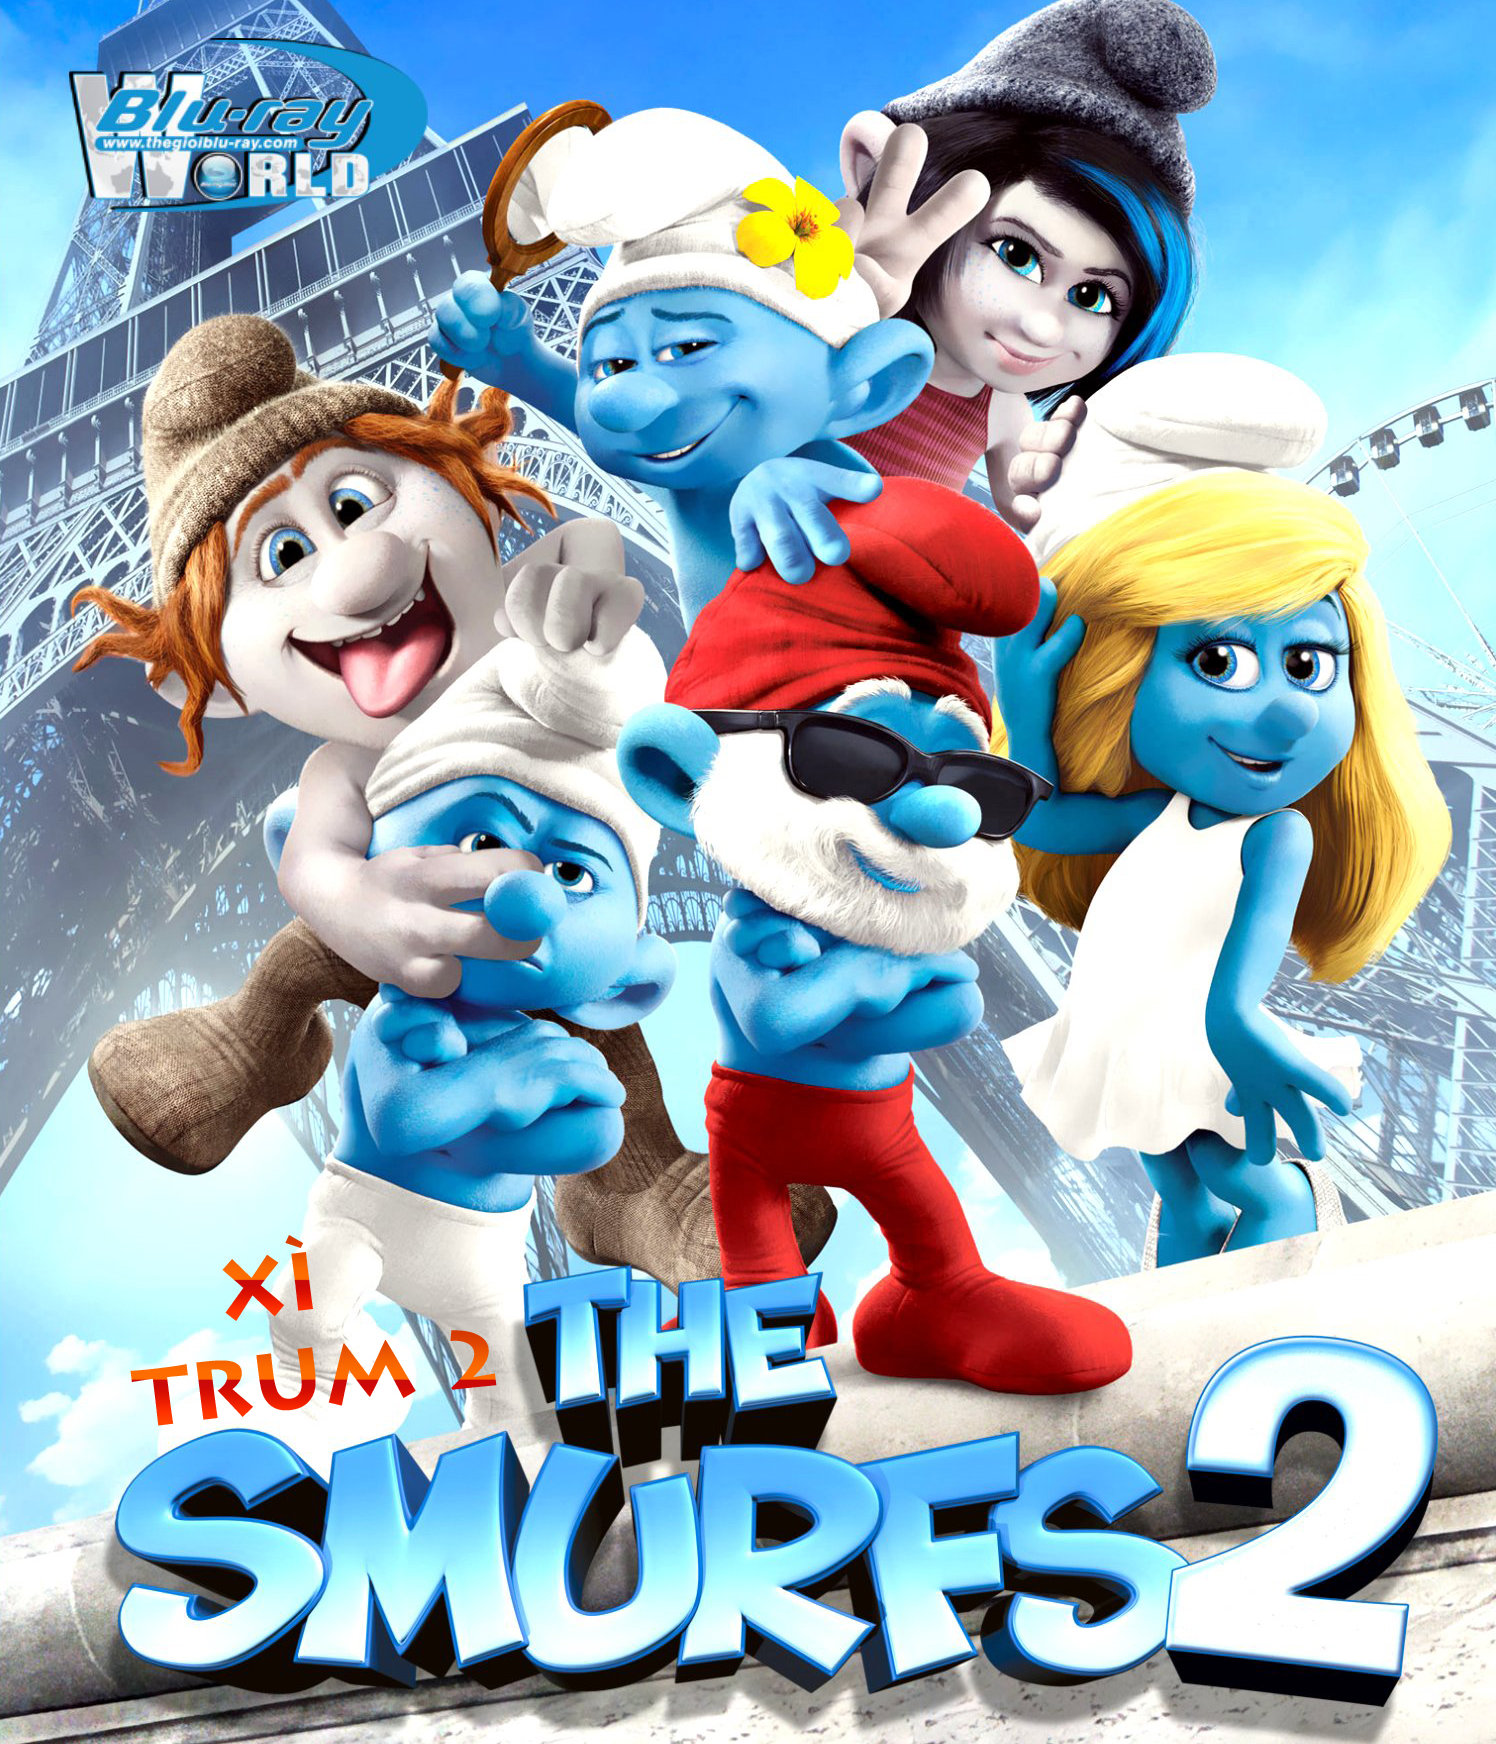 B1516. The Smurfs 2 - XÌ TRUM 2 2D 25G (DTS-HD MA 5.1)